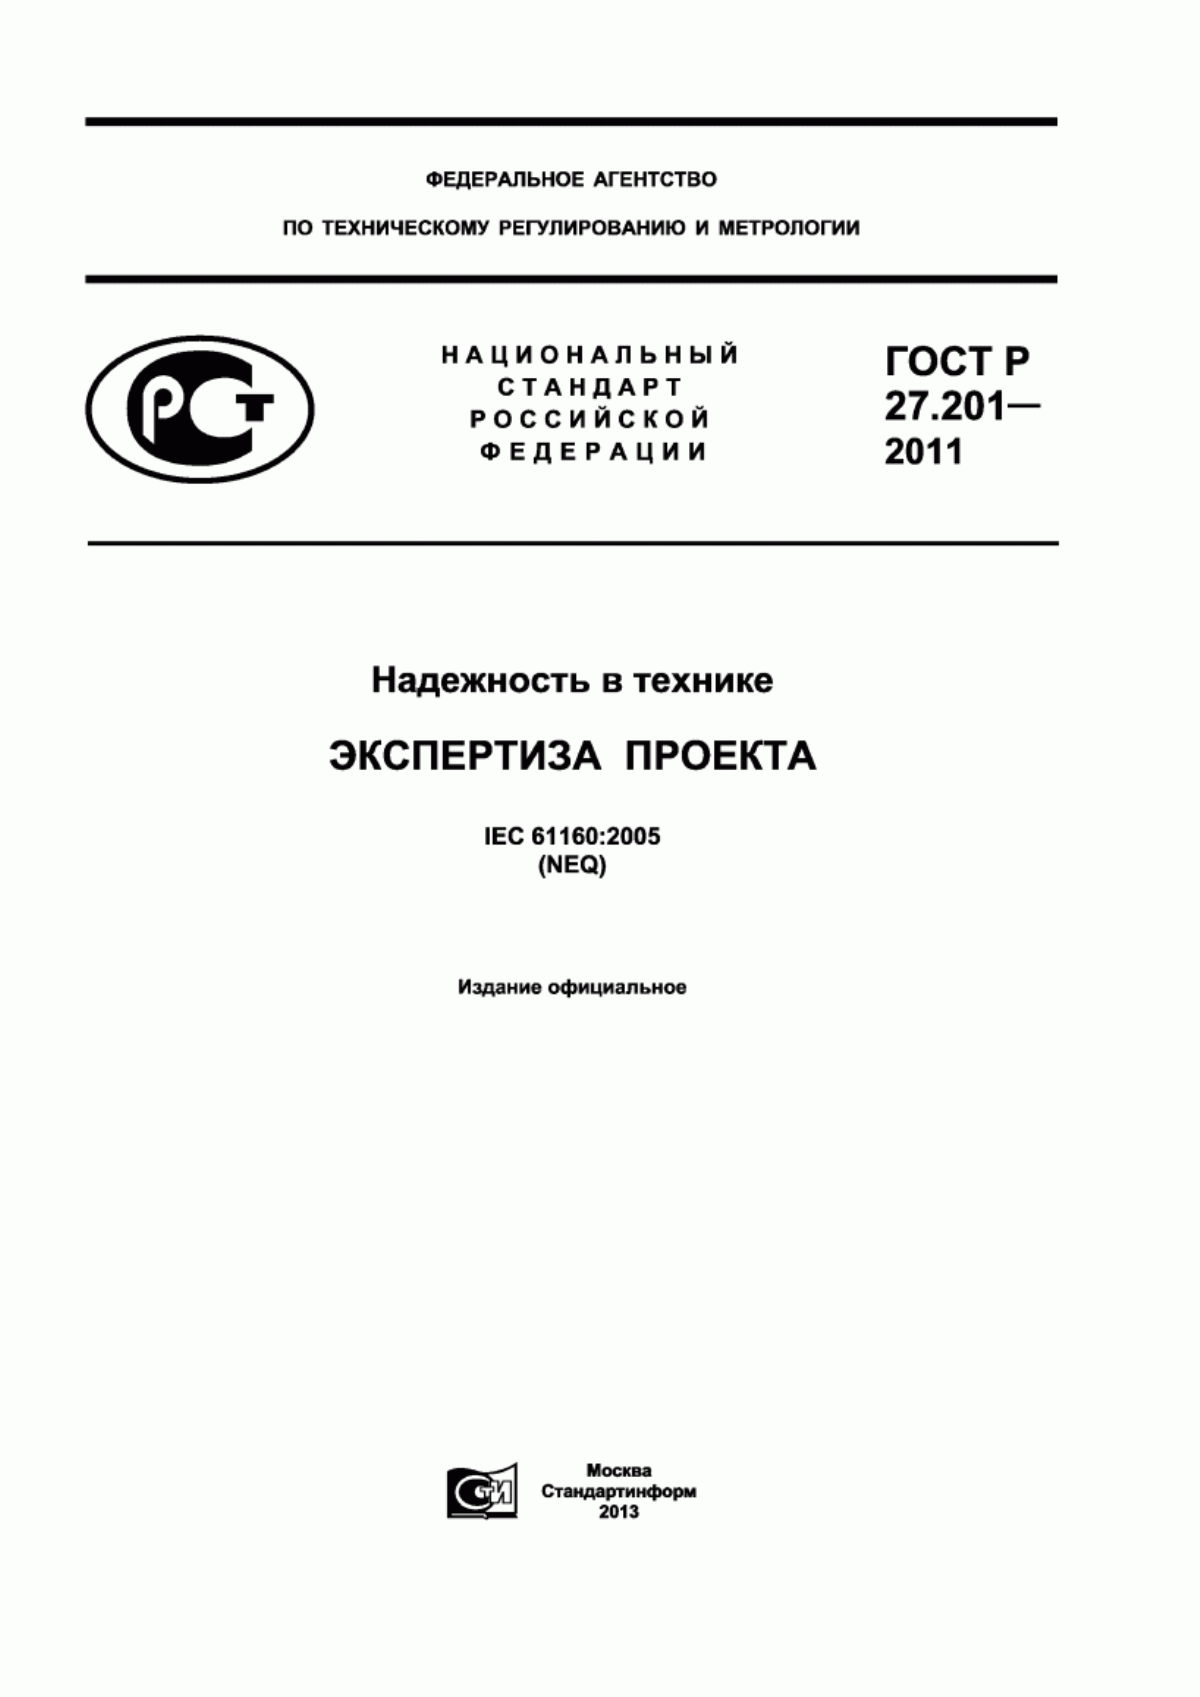 ГОСТ Р 27.201-2011 Надежность в технике. Экспертиза проекта